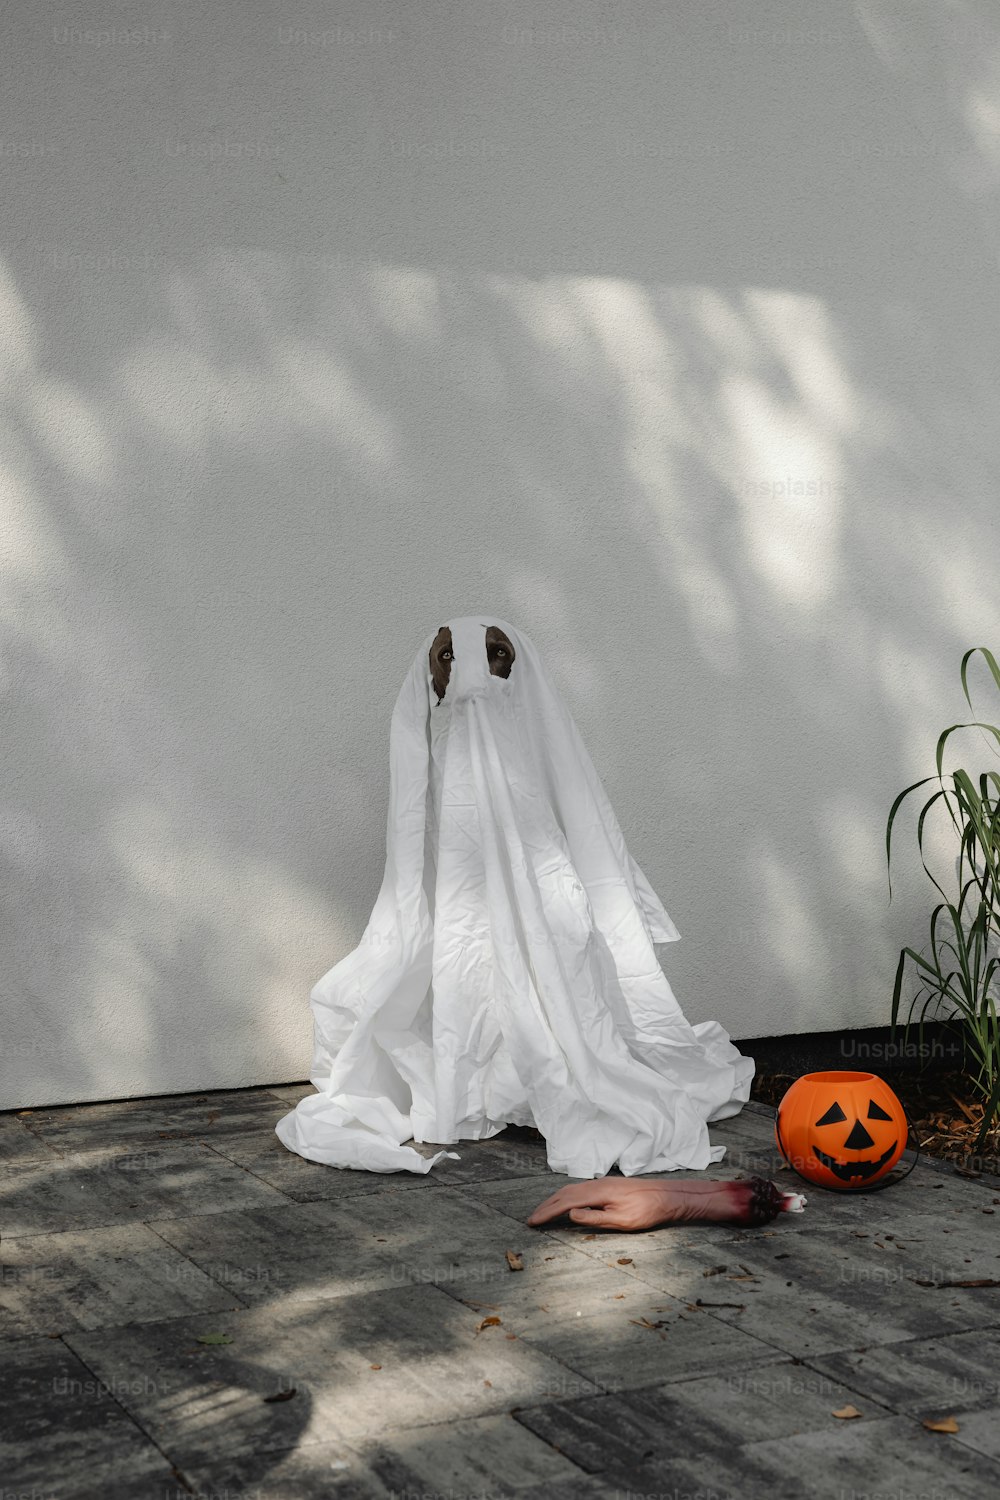 Un fantasma spettrale seduto a terra accanto a una zucca